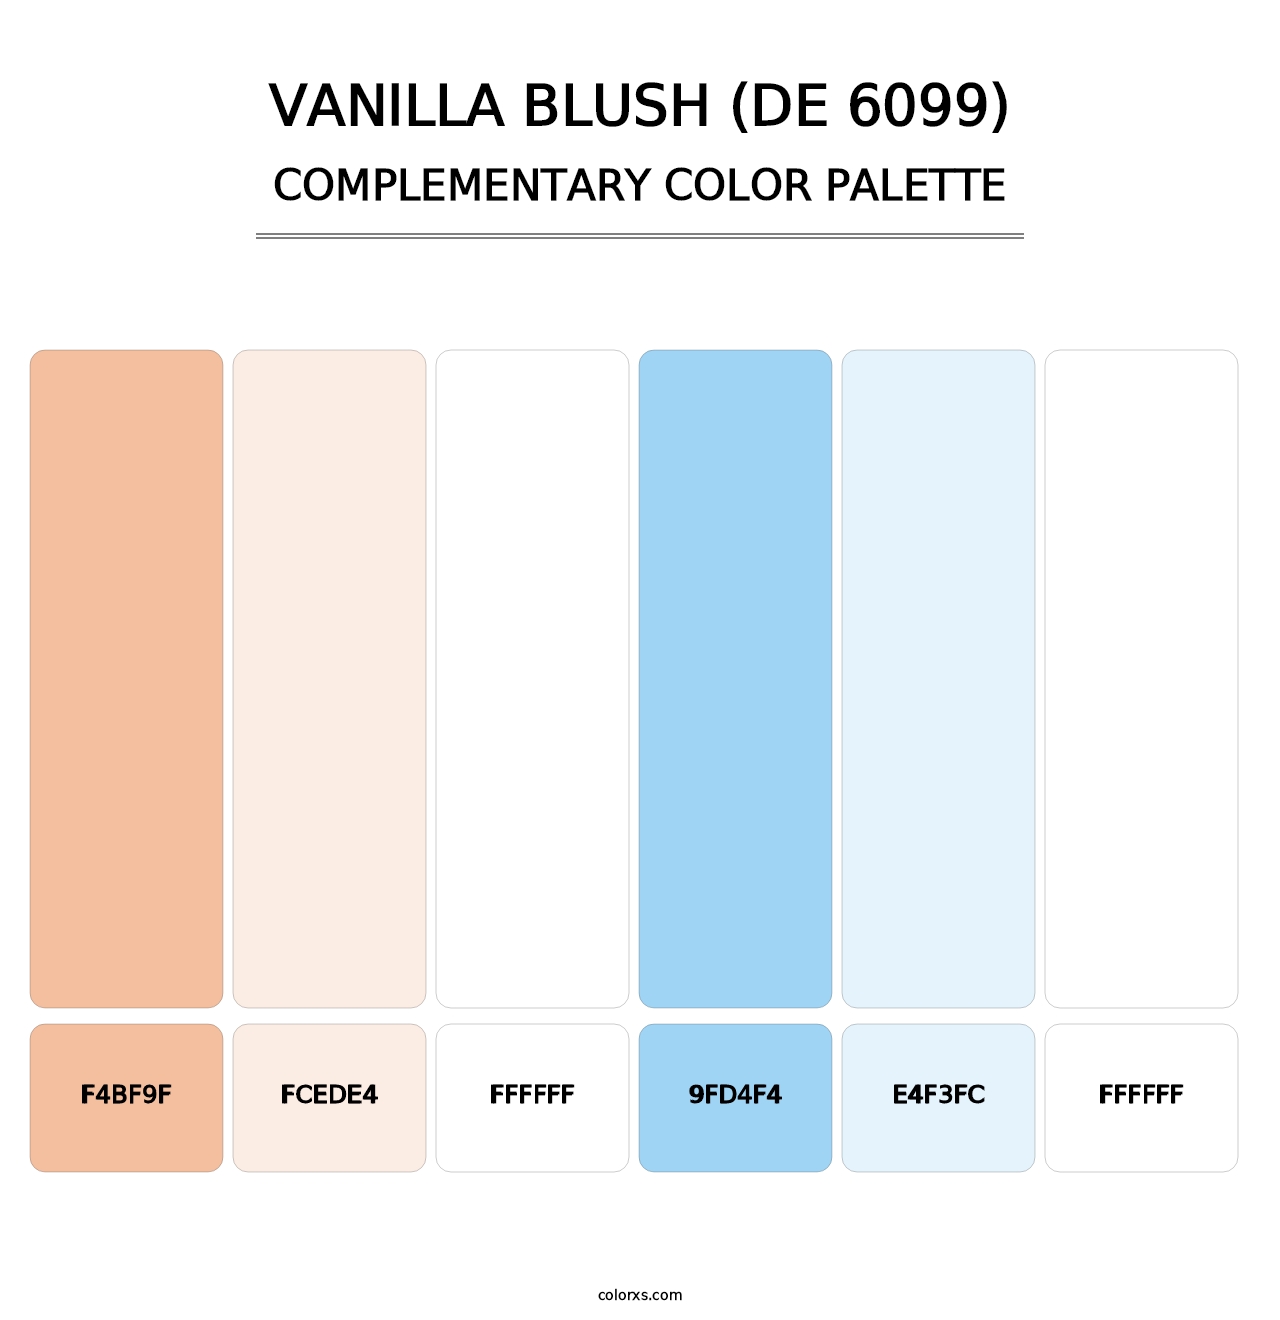 Vanilla Blush (DE 6099) - Complementary Color Palette